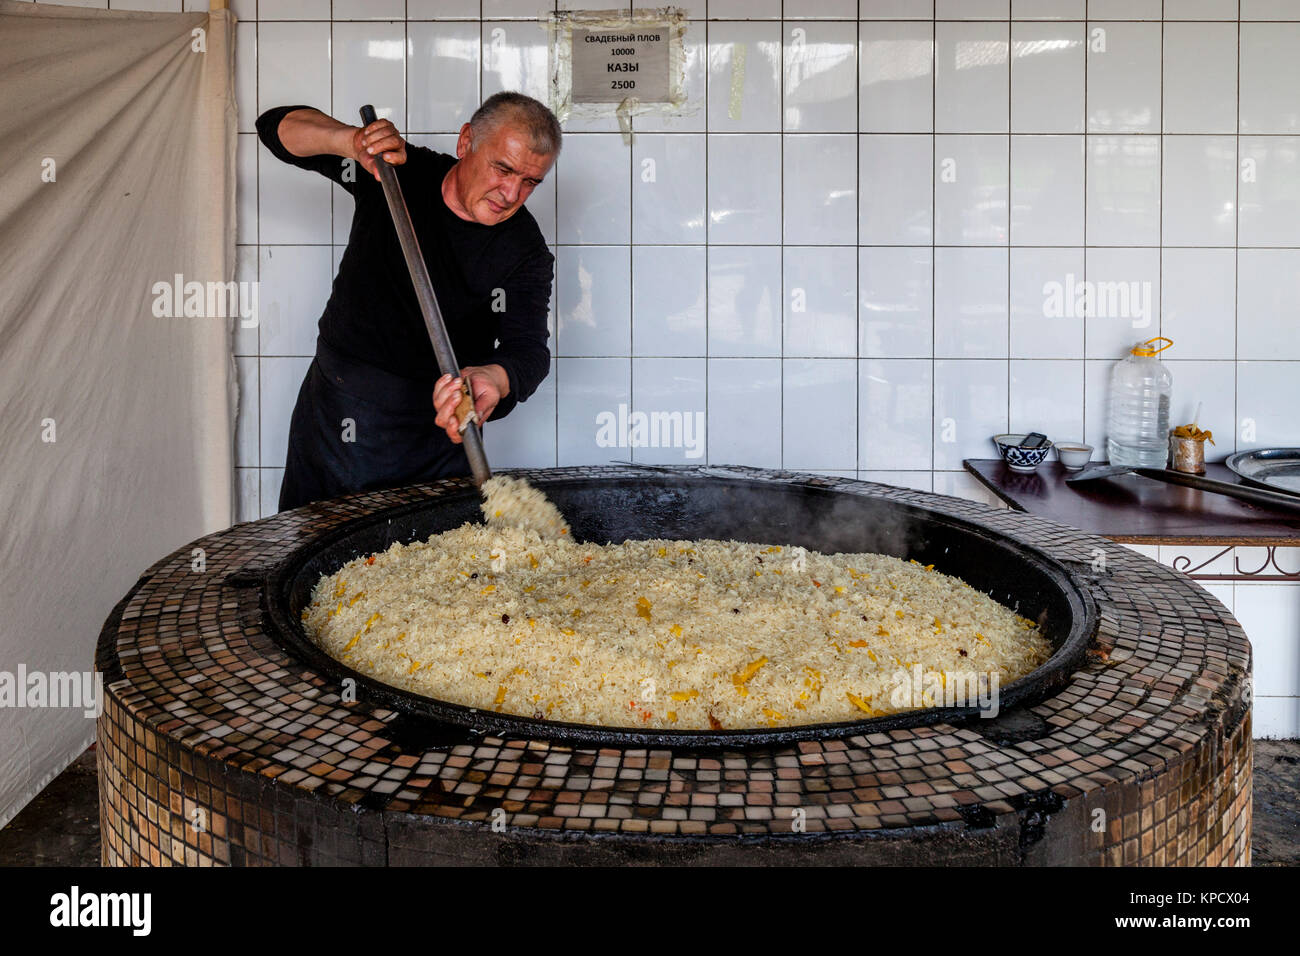 https://c8.alamy.com/compes/kpcx04/un-hombre-cocina-arroz-para-el-plov-el-plato-nacional-en-el-centro-de-asia-central-plov-tashkent-uzbekistan-kpcx04.jpg